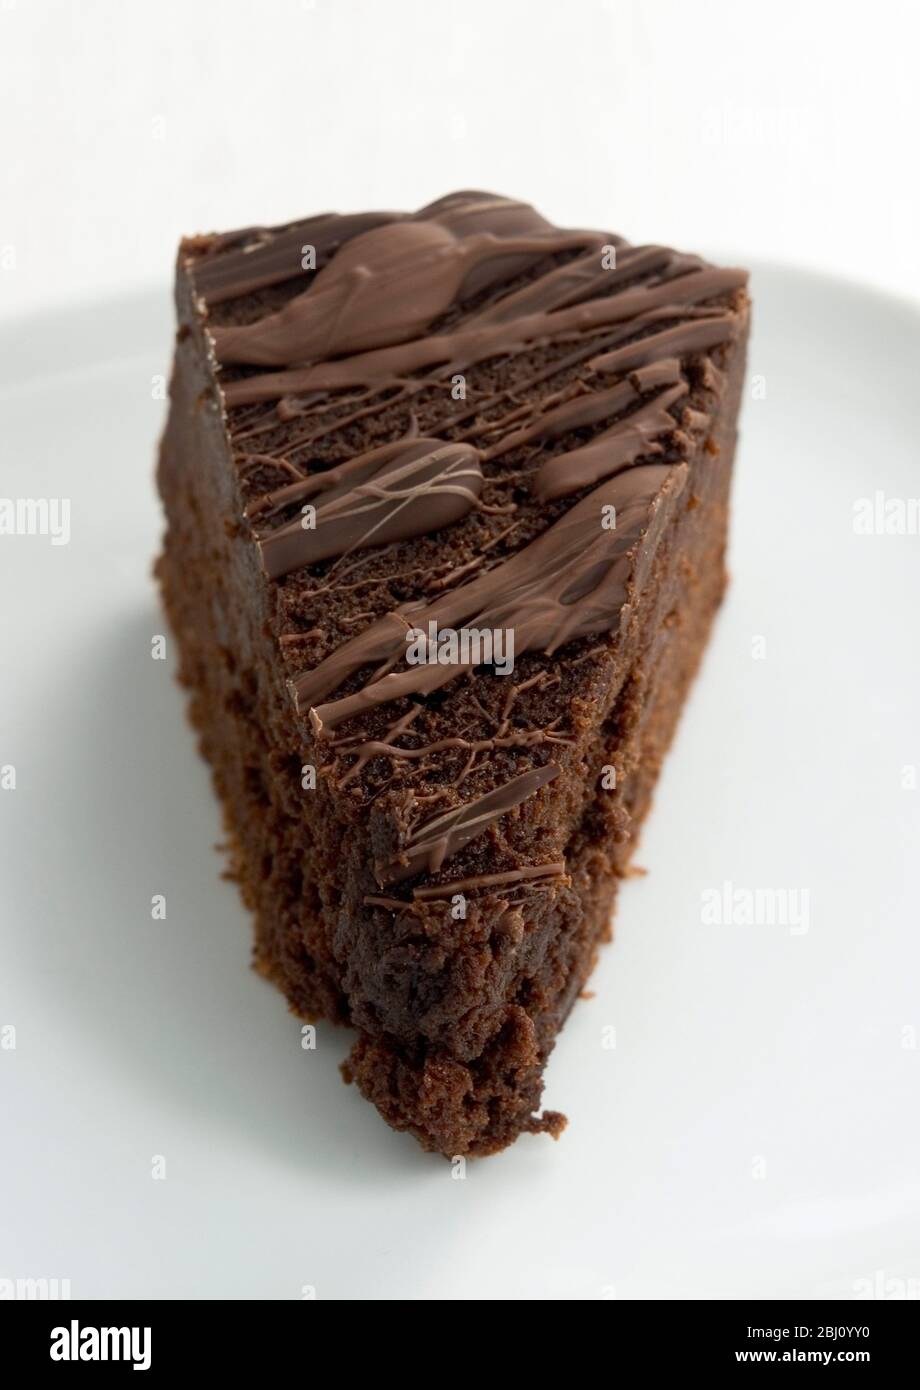 Scheibe von reichhaltiger dunkler Schokoladenkuchen mit geschmolzener Schokoladenüberzug - Stockfoto